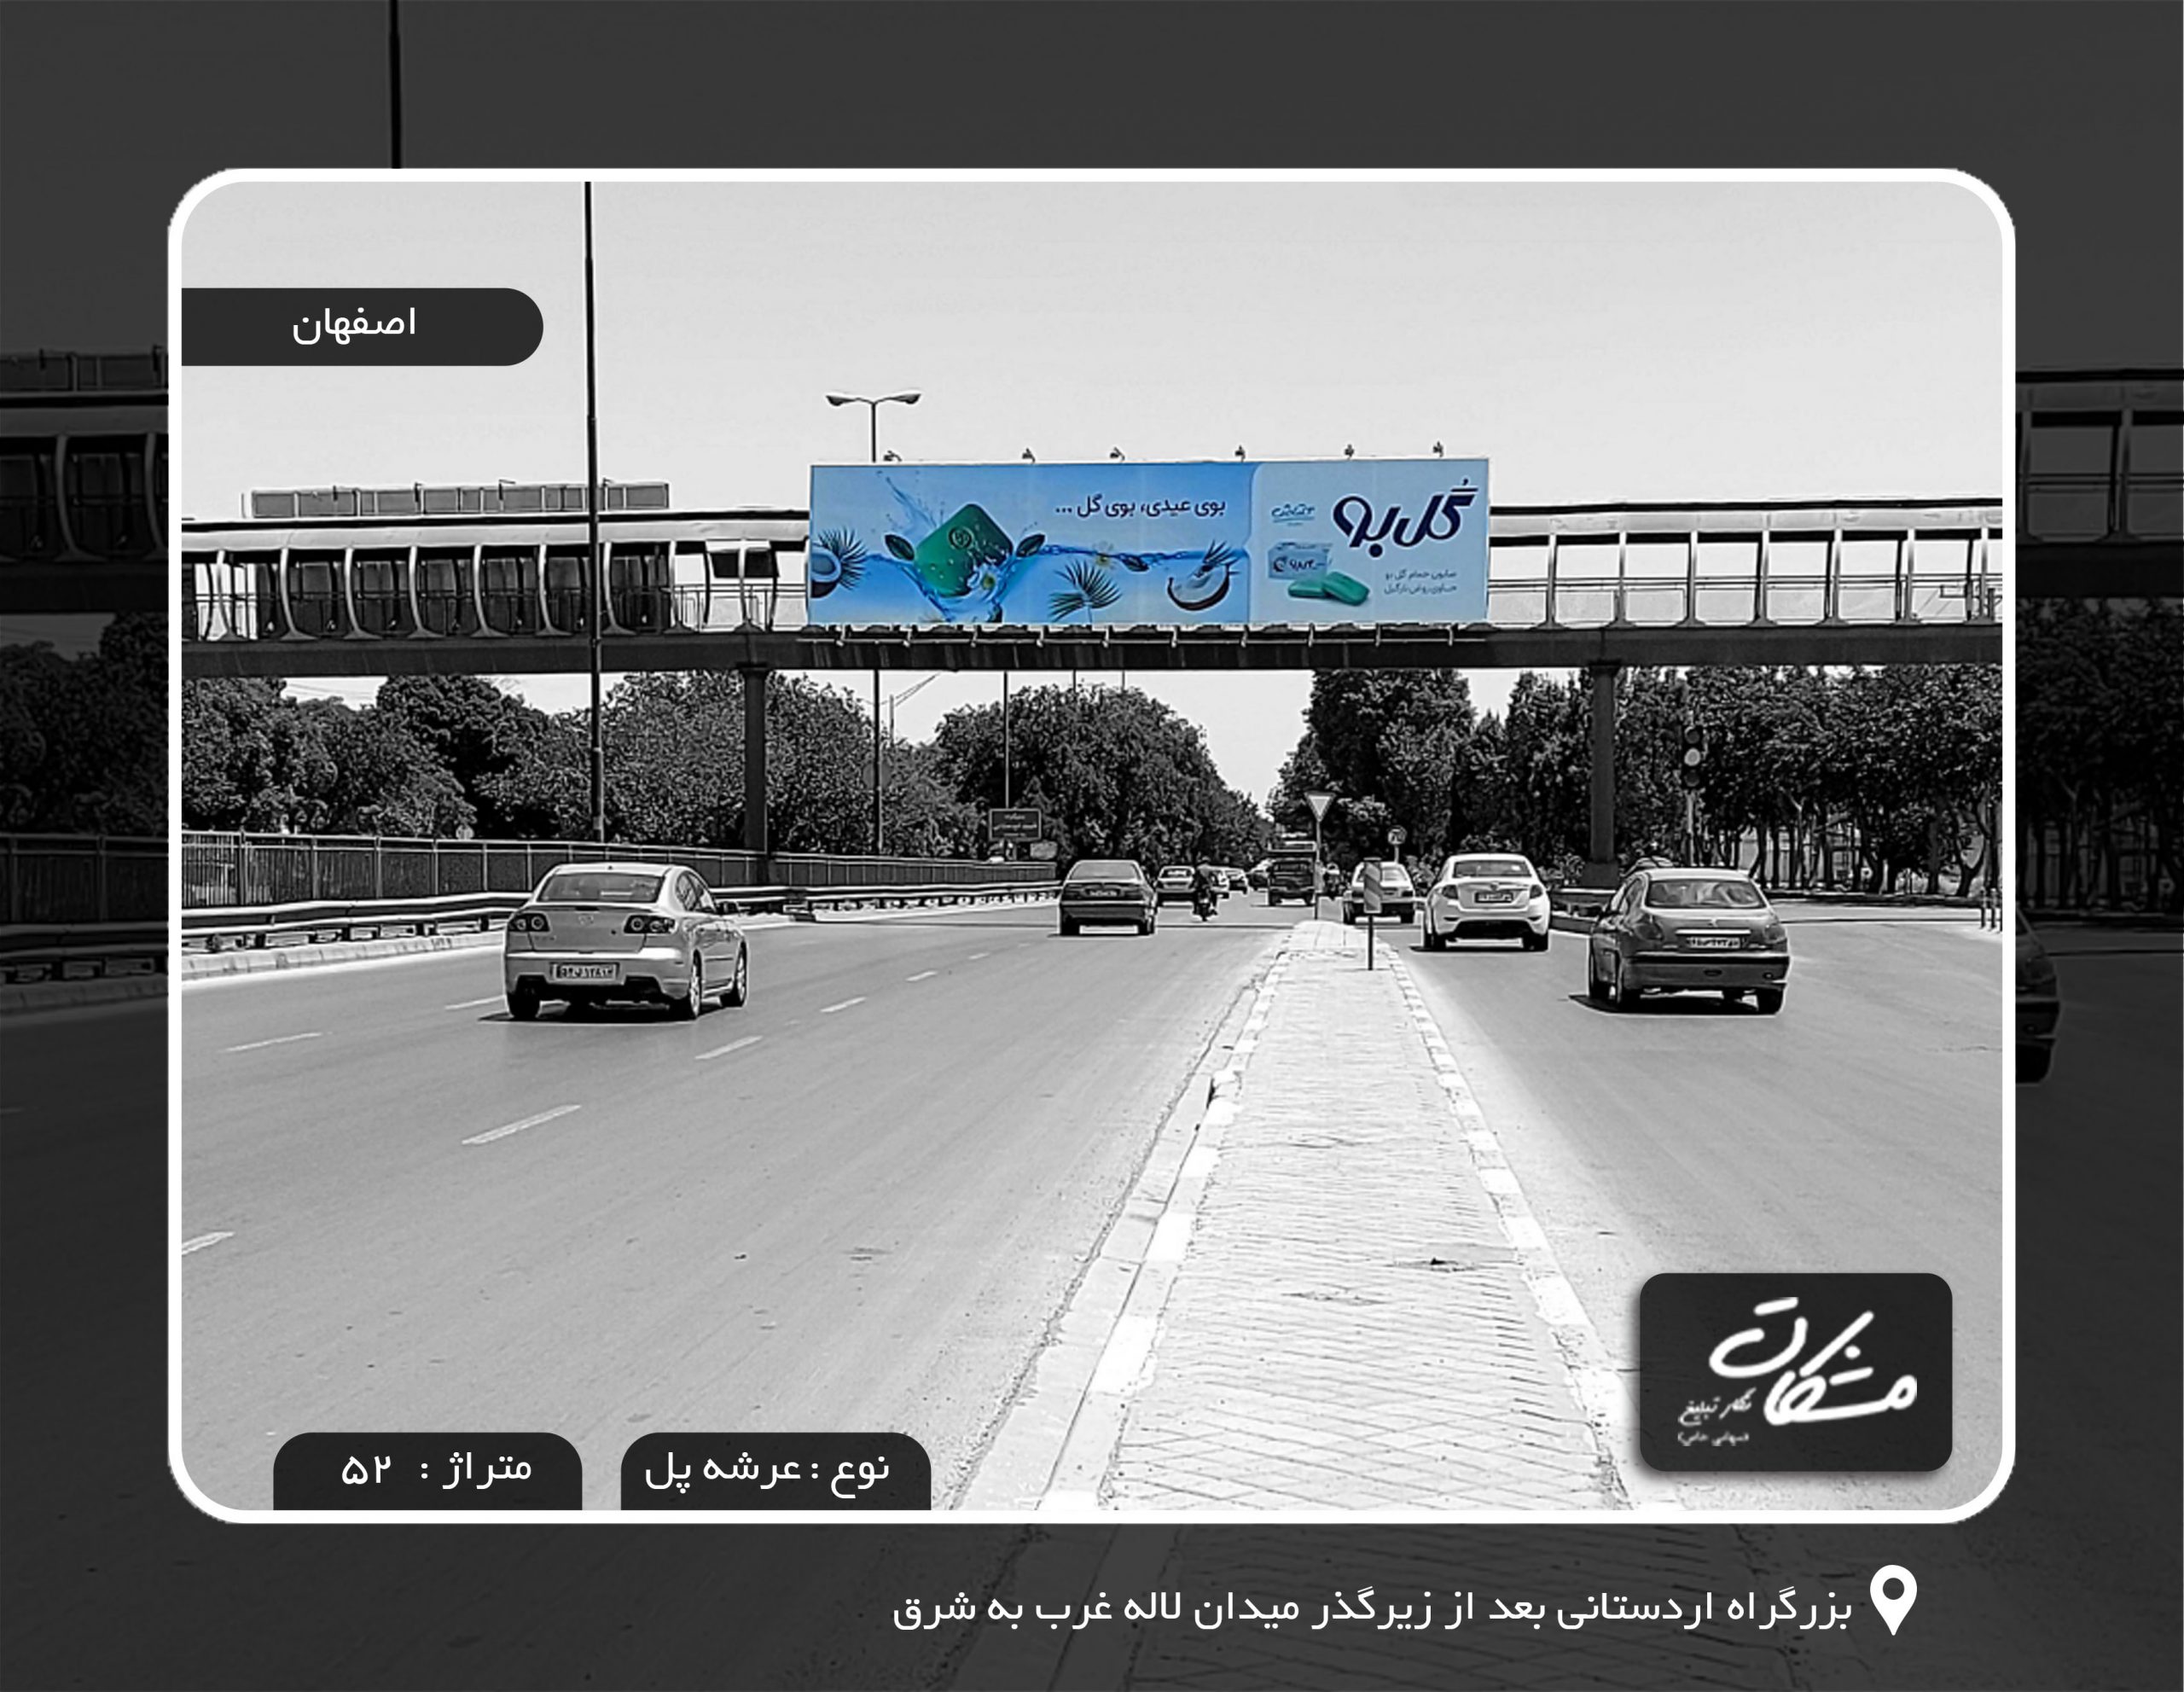 بیلبورد اصفهان بزرگراه اردستانی بعد از زیرگذر میدان لاله غرب به شرق